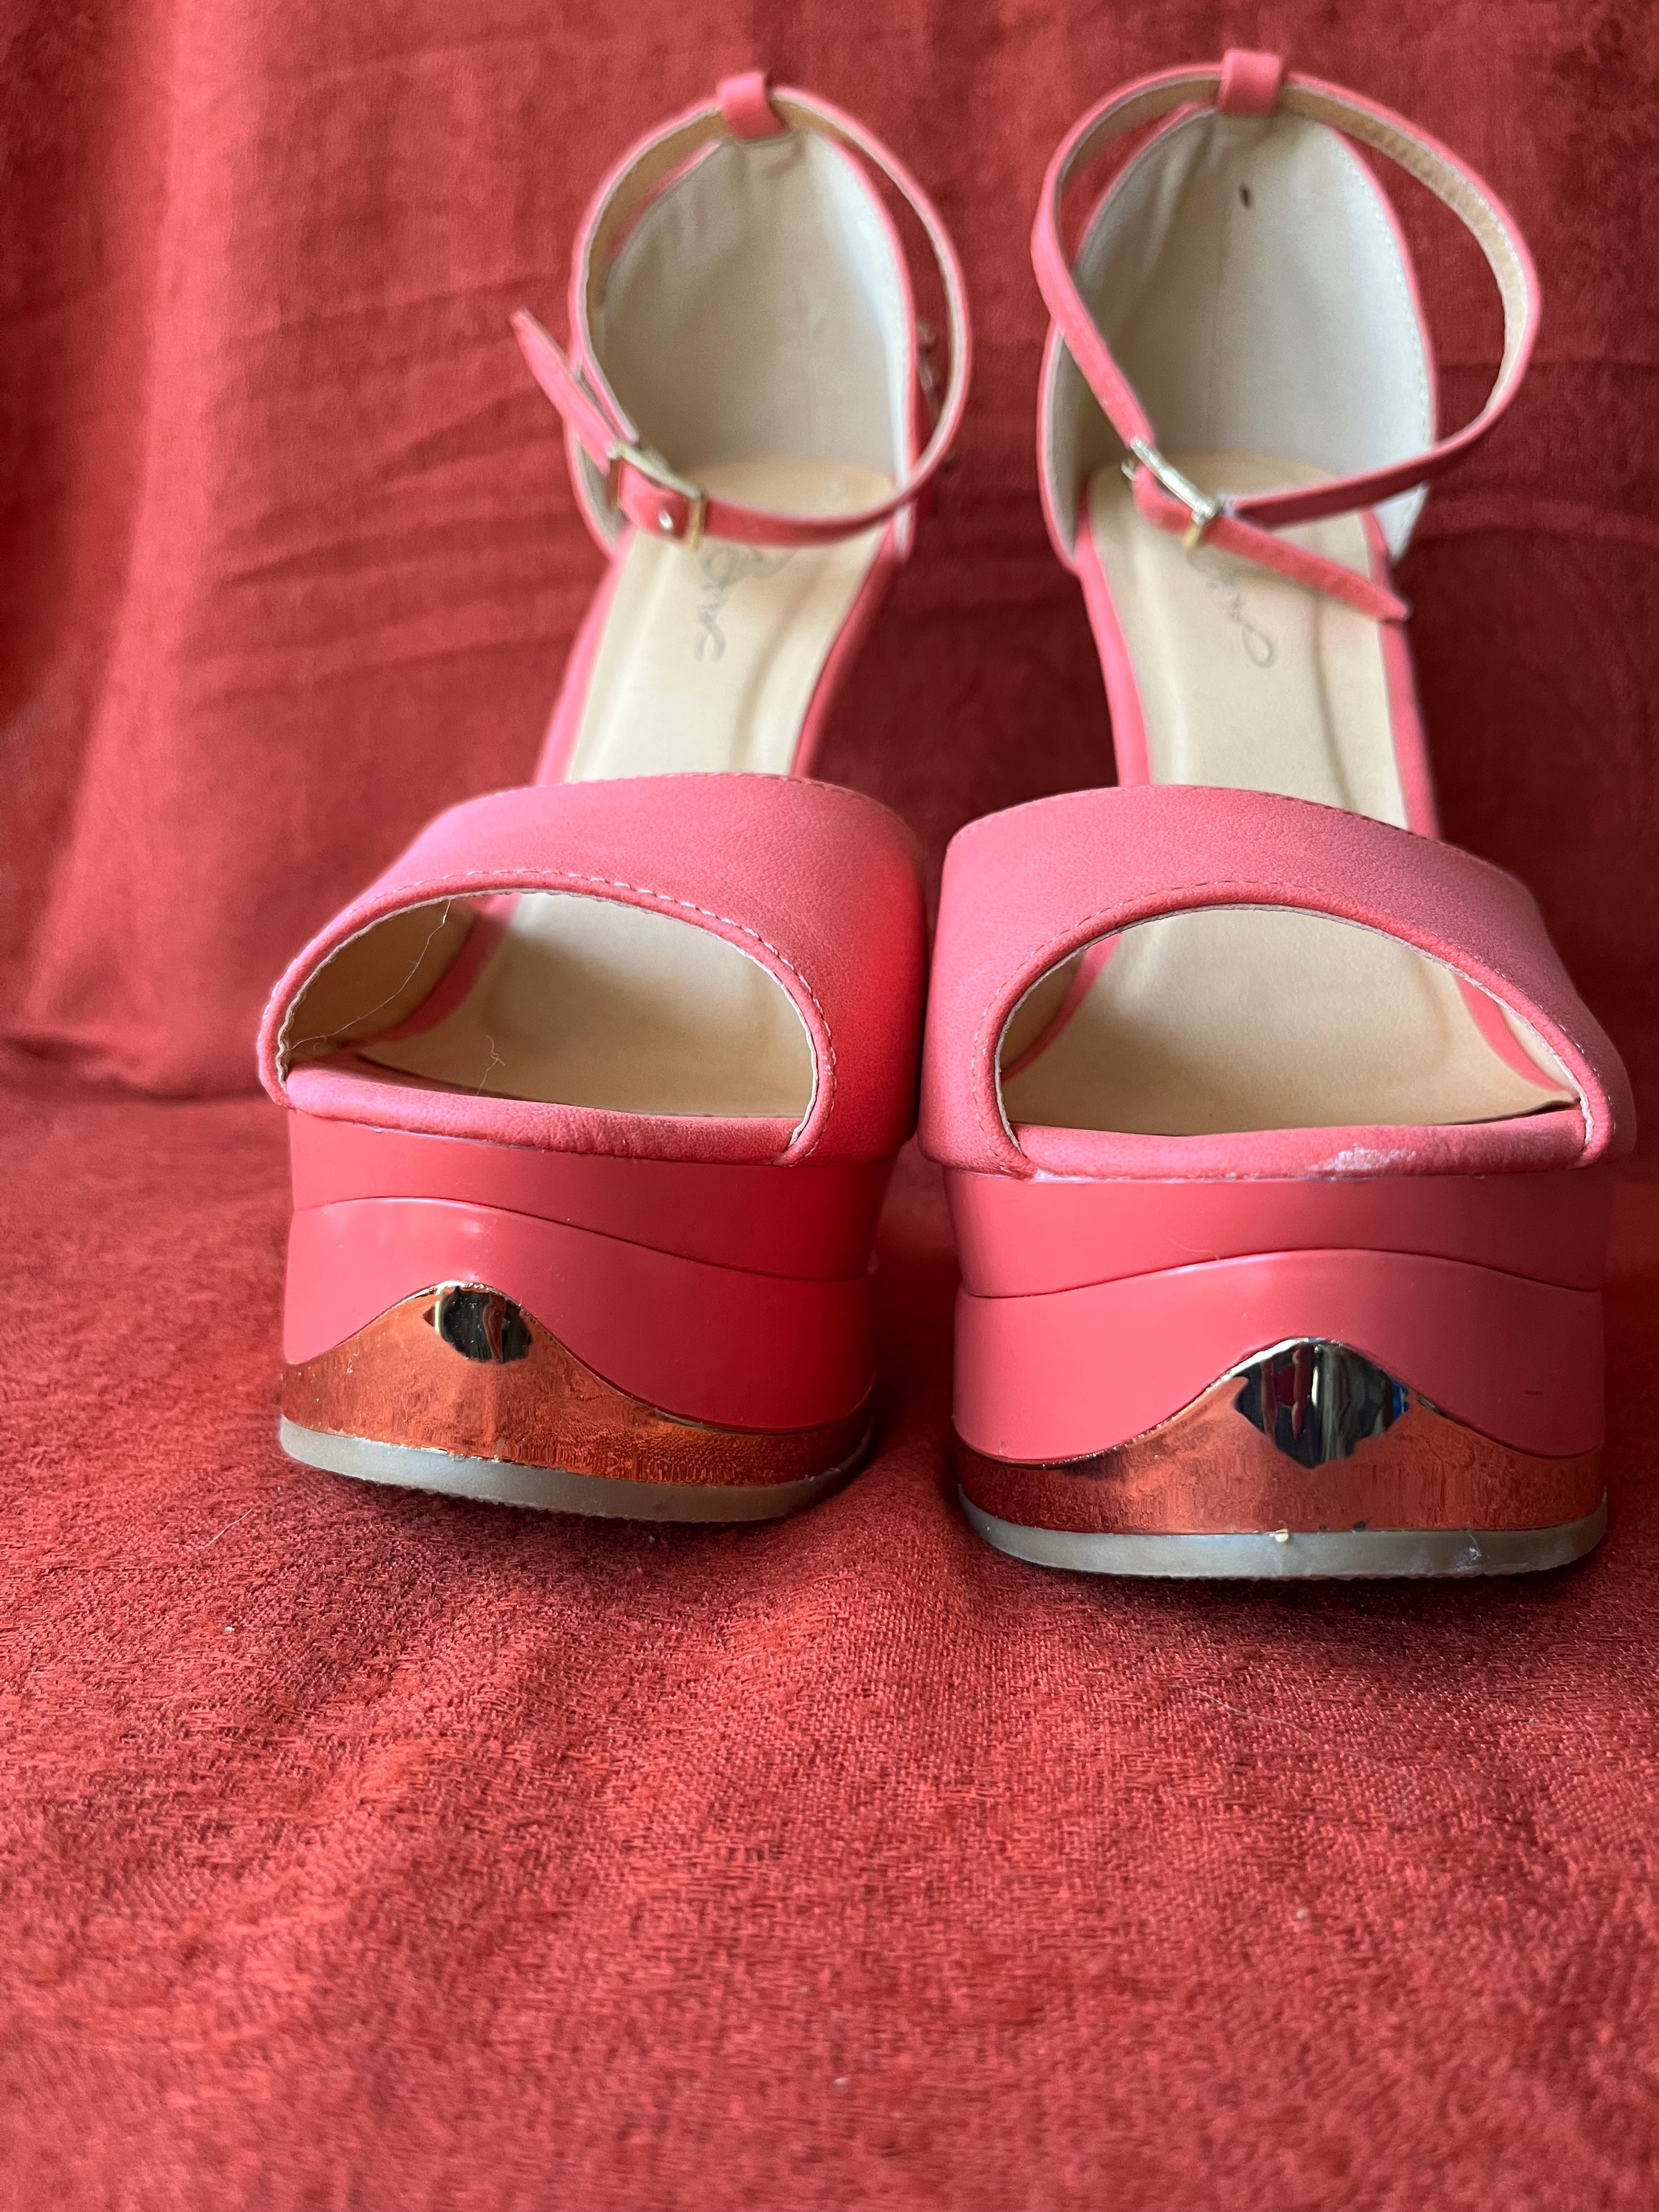 shoes women high heels size 9 new - Gem